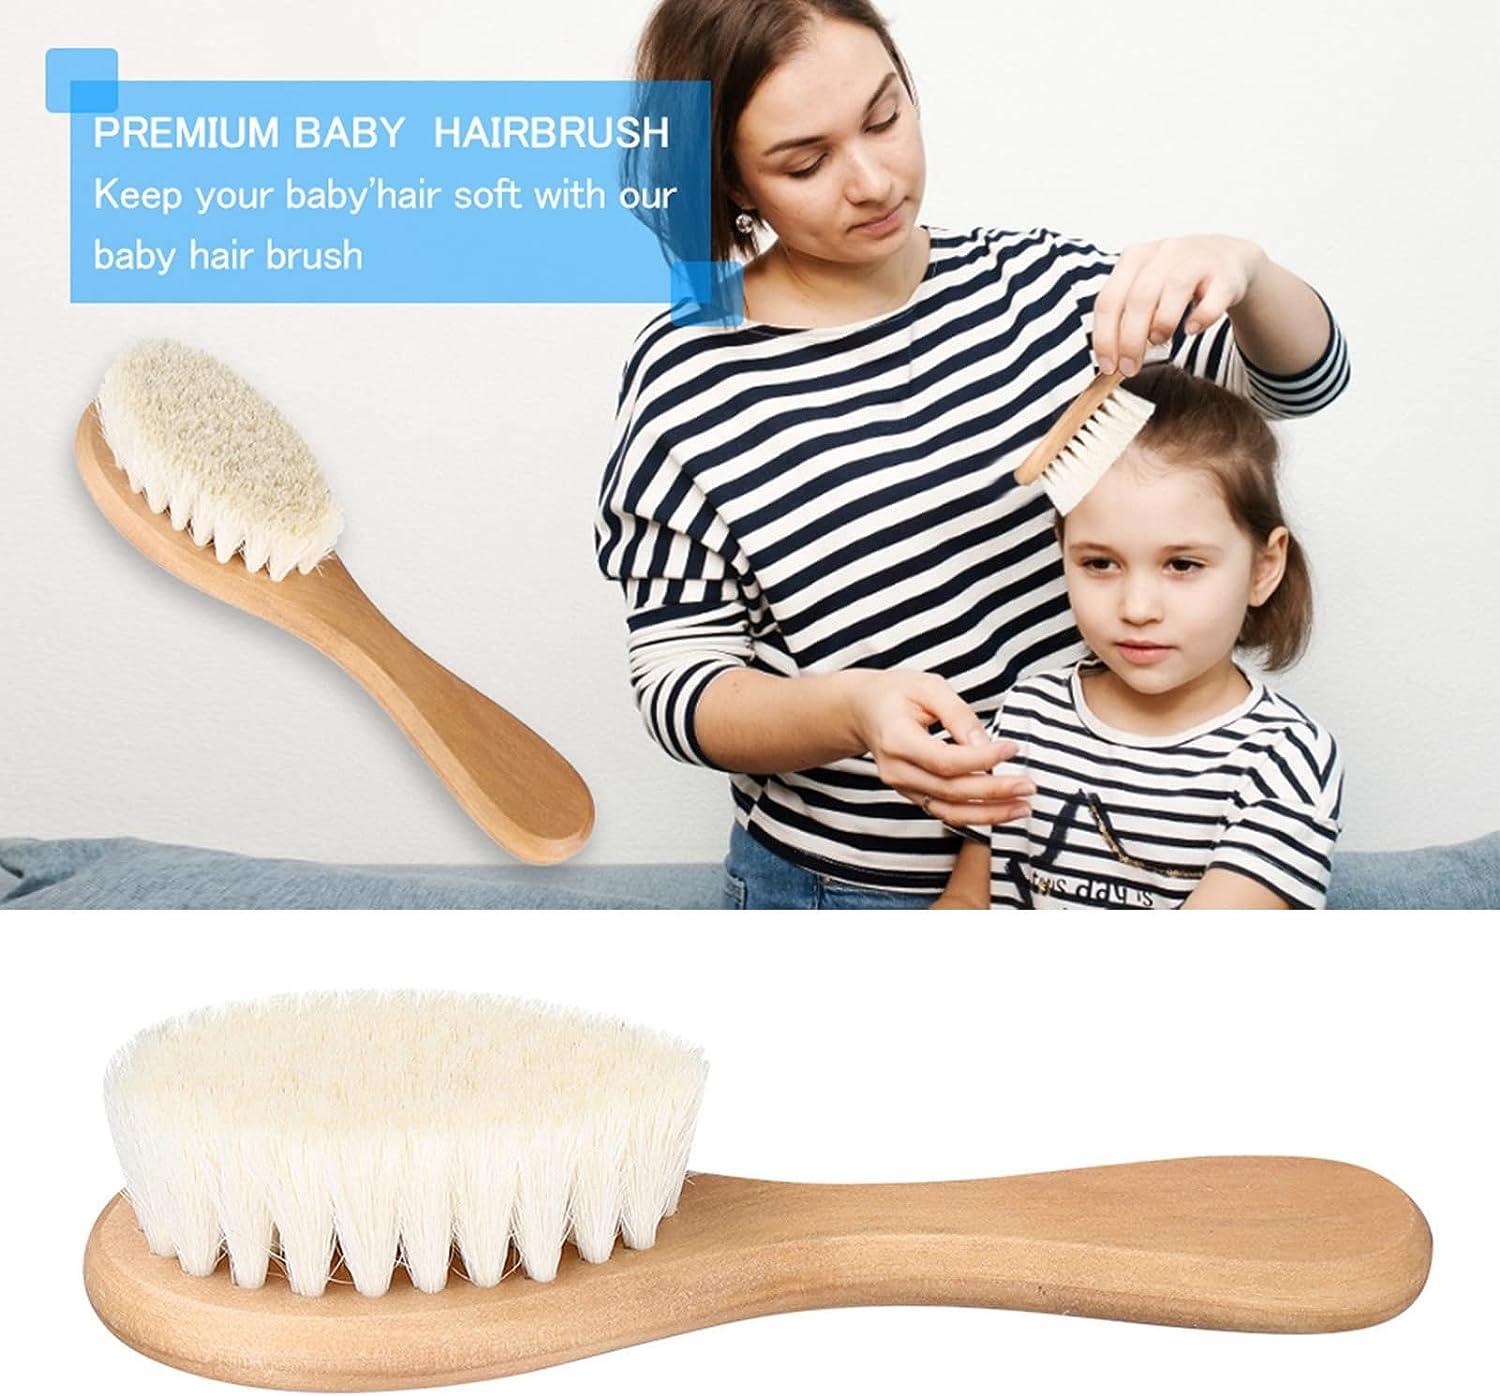  Baby Hair Brush for Newborn - Natural Soft Goat Bristles  Premium Wooden Hair Brush Perfect Scalp Grooming Hairbrush Perfect Baby  Registry Gift : Baby